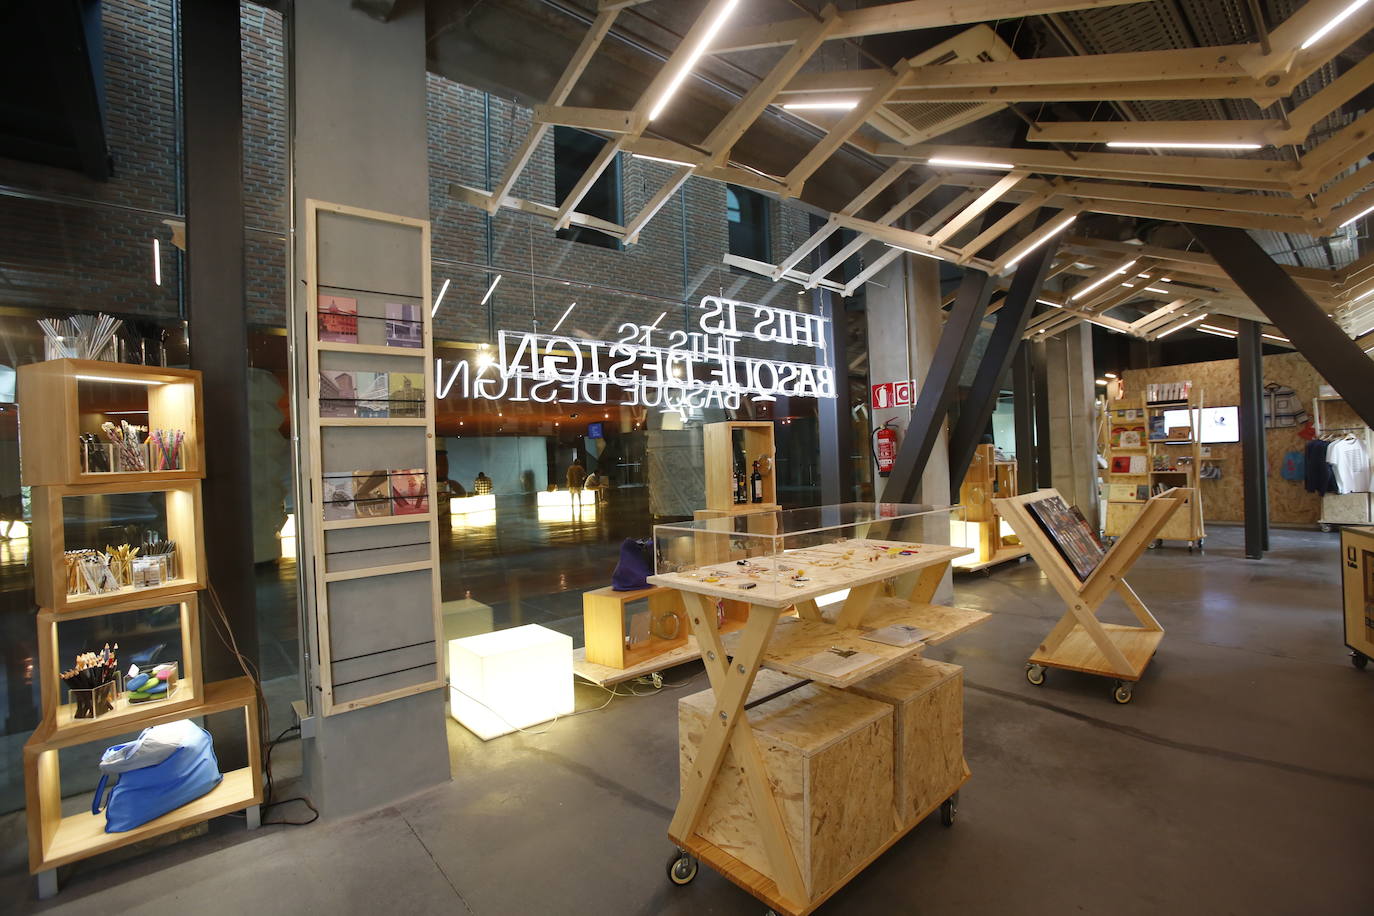 La Alhóndiga abre un espacio de 150 metros cuadrados para vender productos de artistas de Euskadi, Navarra y Aquitania